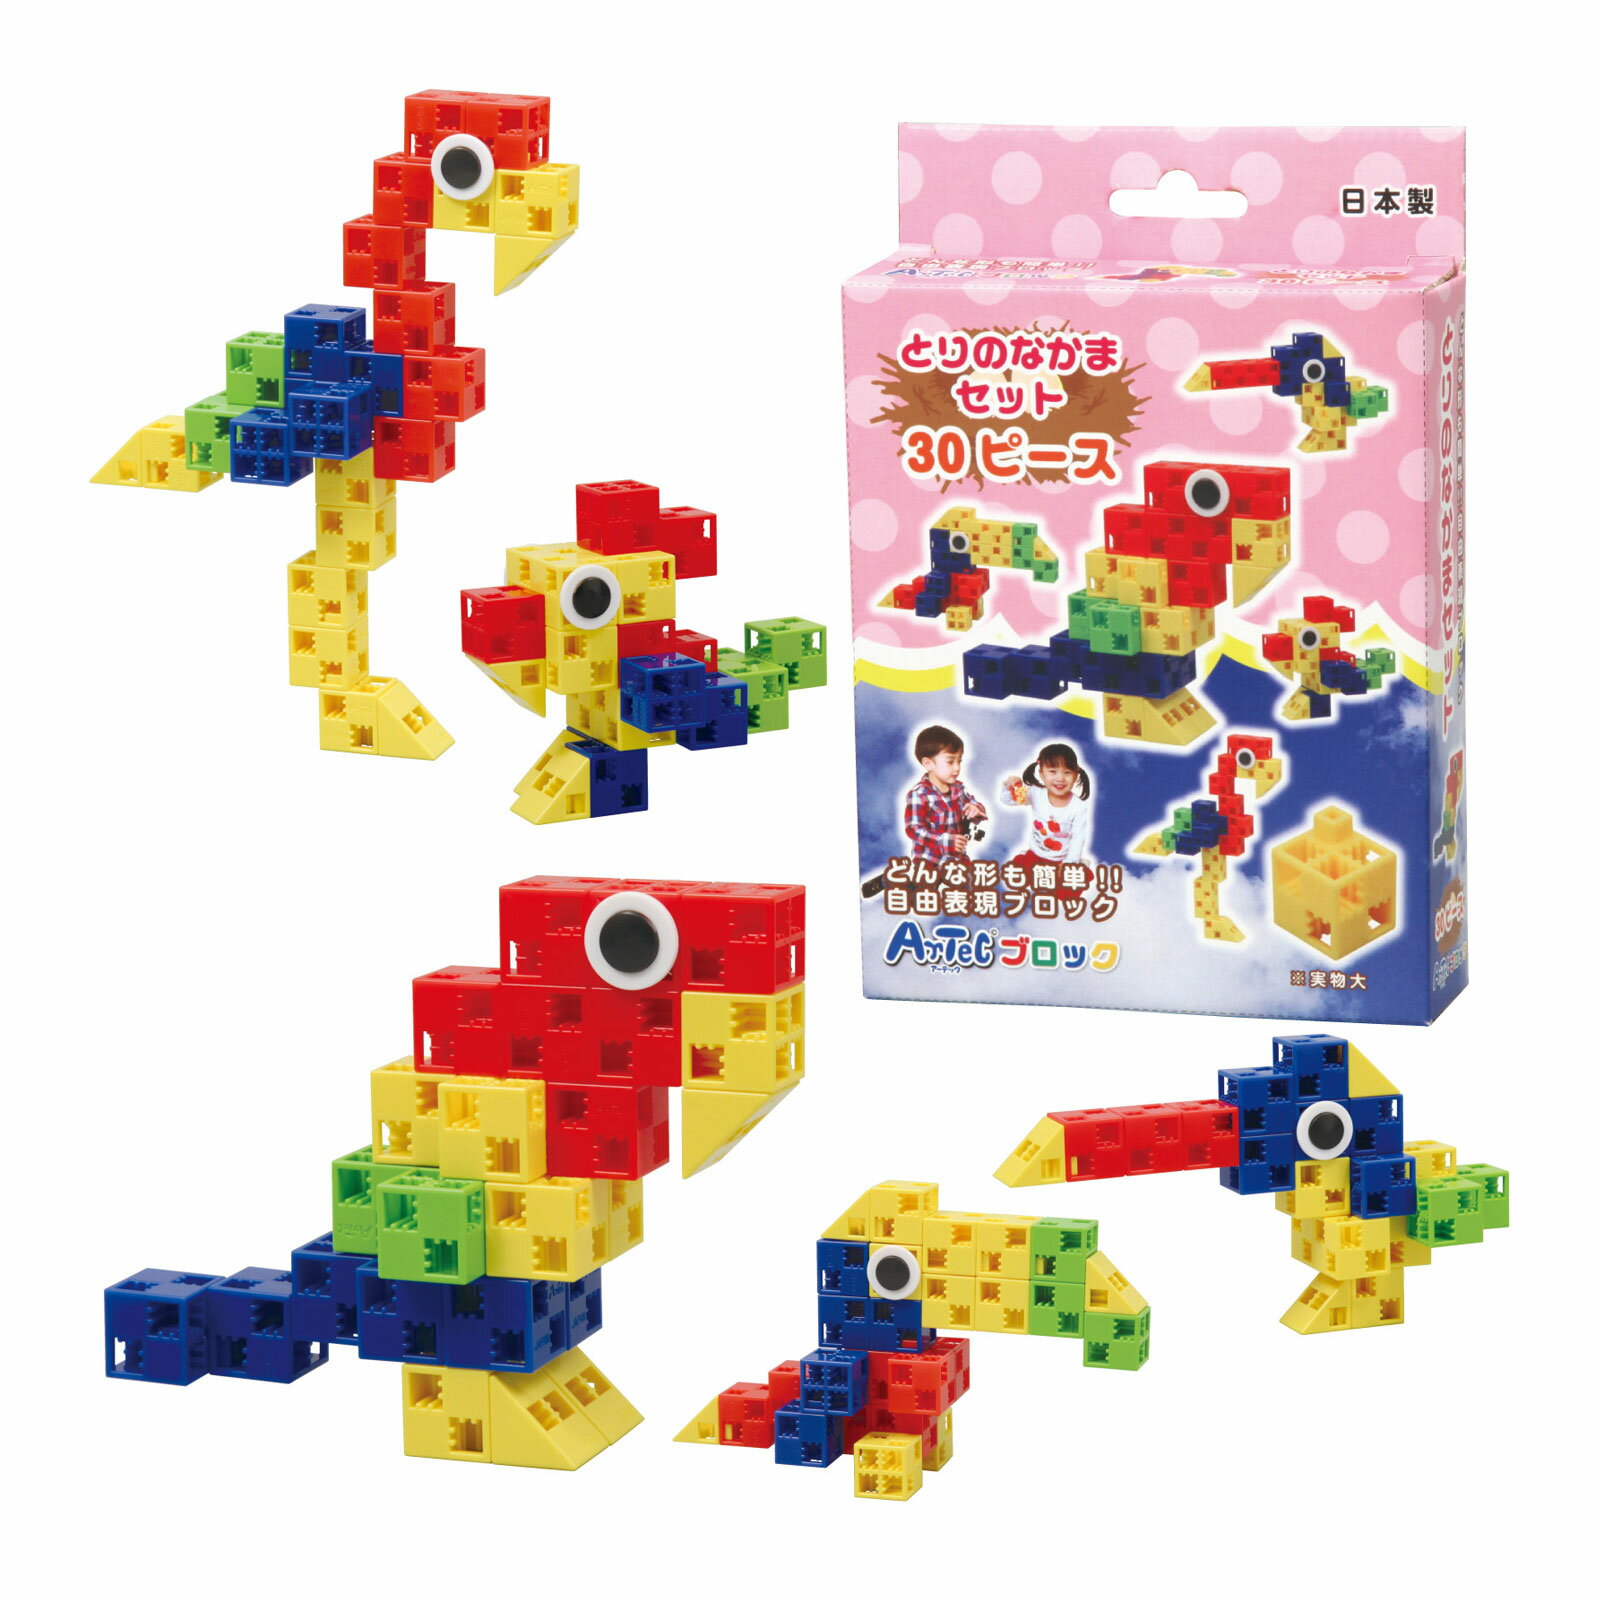 ブロック おもちゃ アーテックブロック とりのなかまセット 日本製 30ピース 鳥 キッズ ジュニア 日本製 ゲーム 玩具 レゴ・レゴブロックのように自由に遊べます 室内